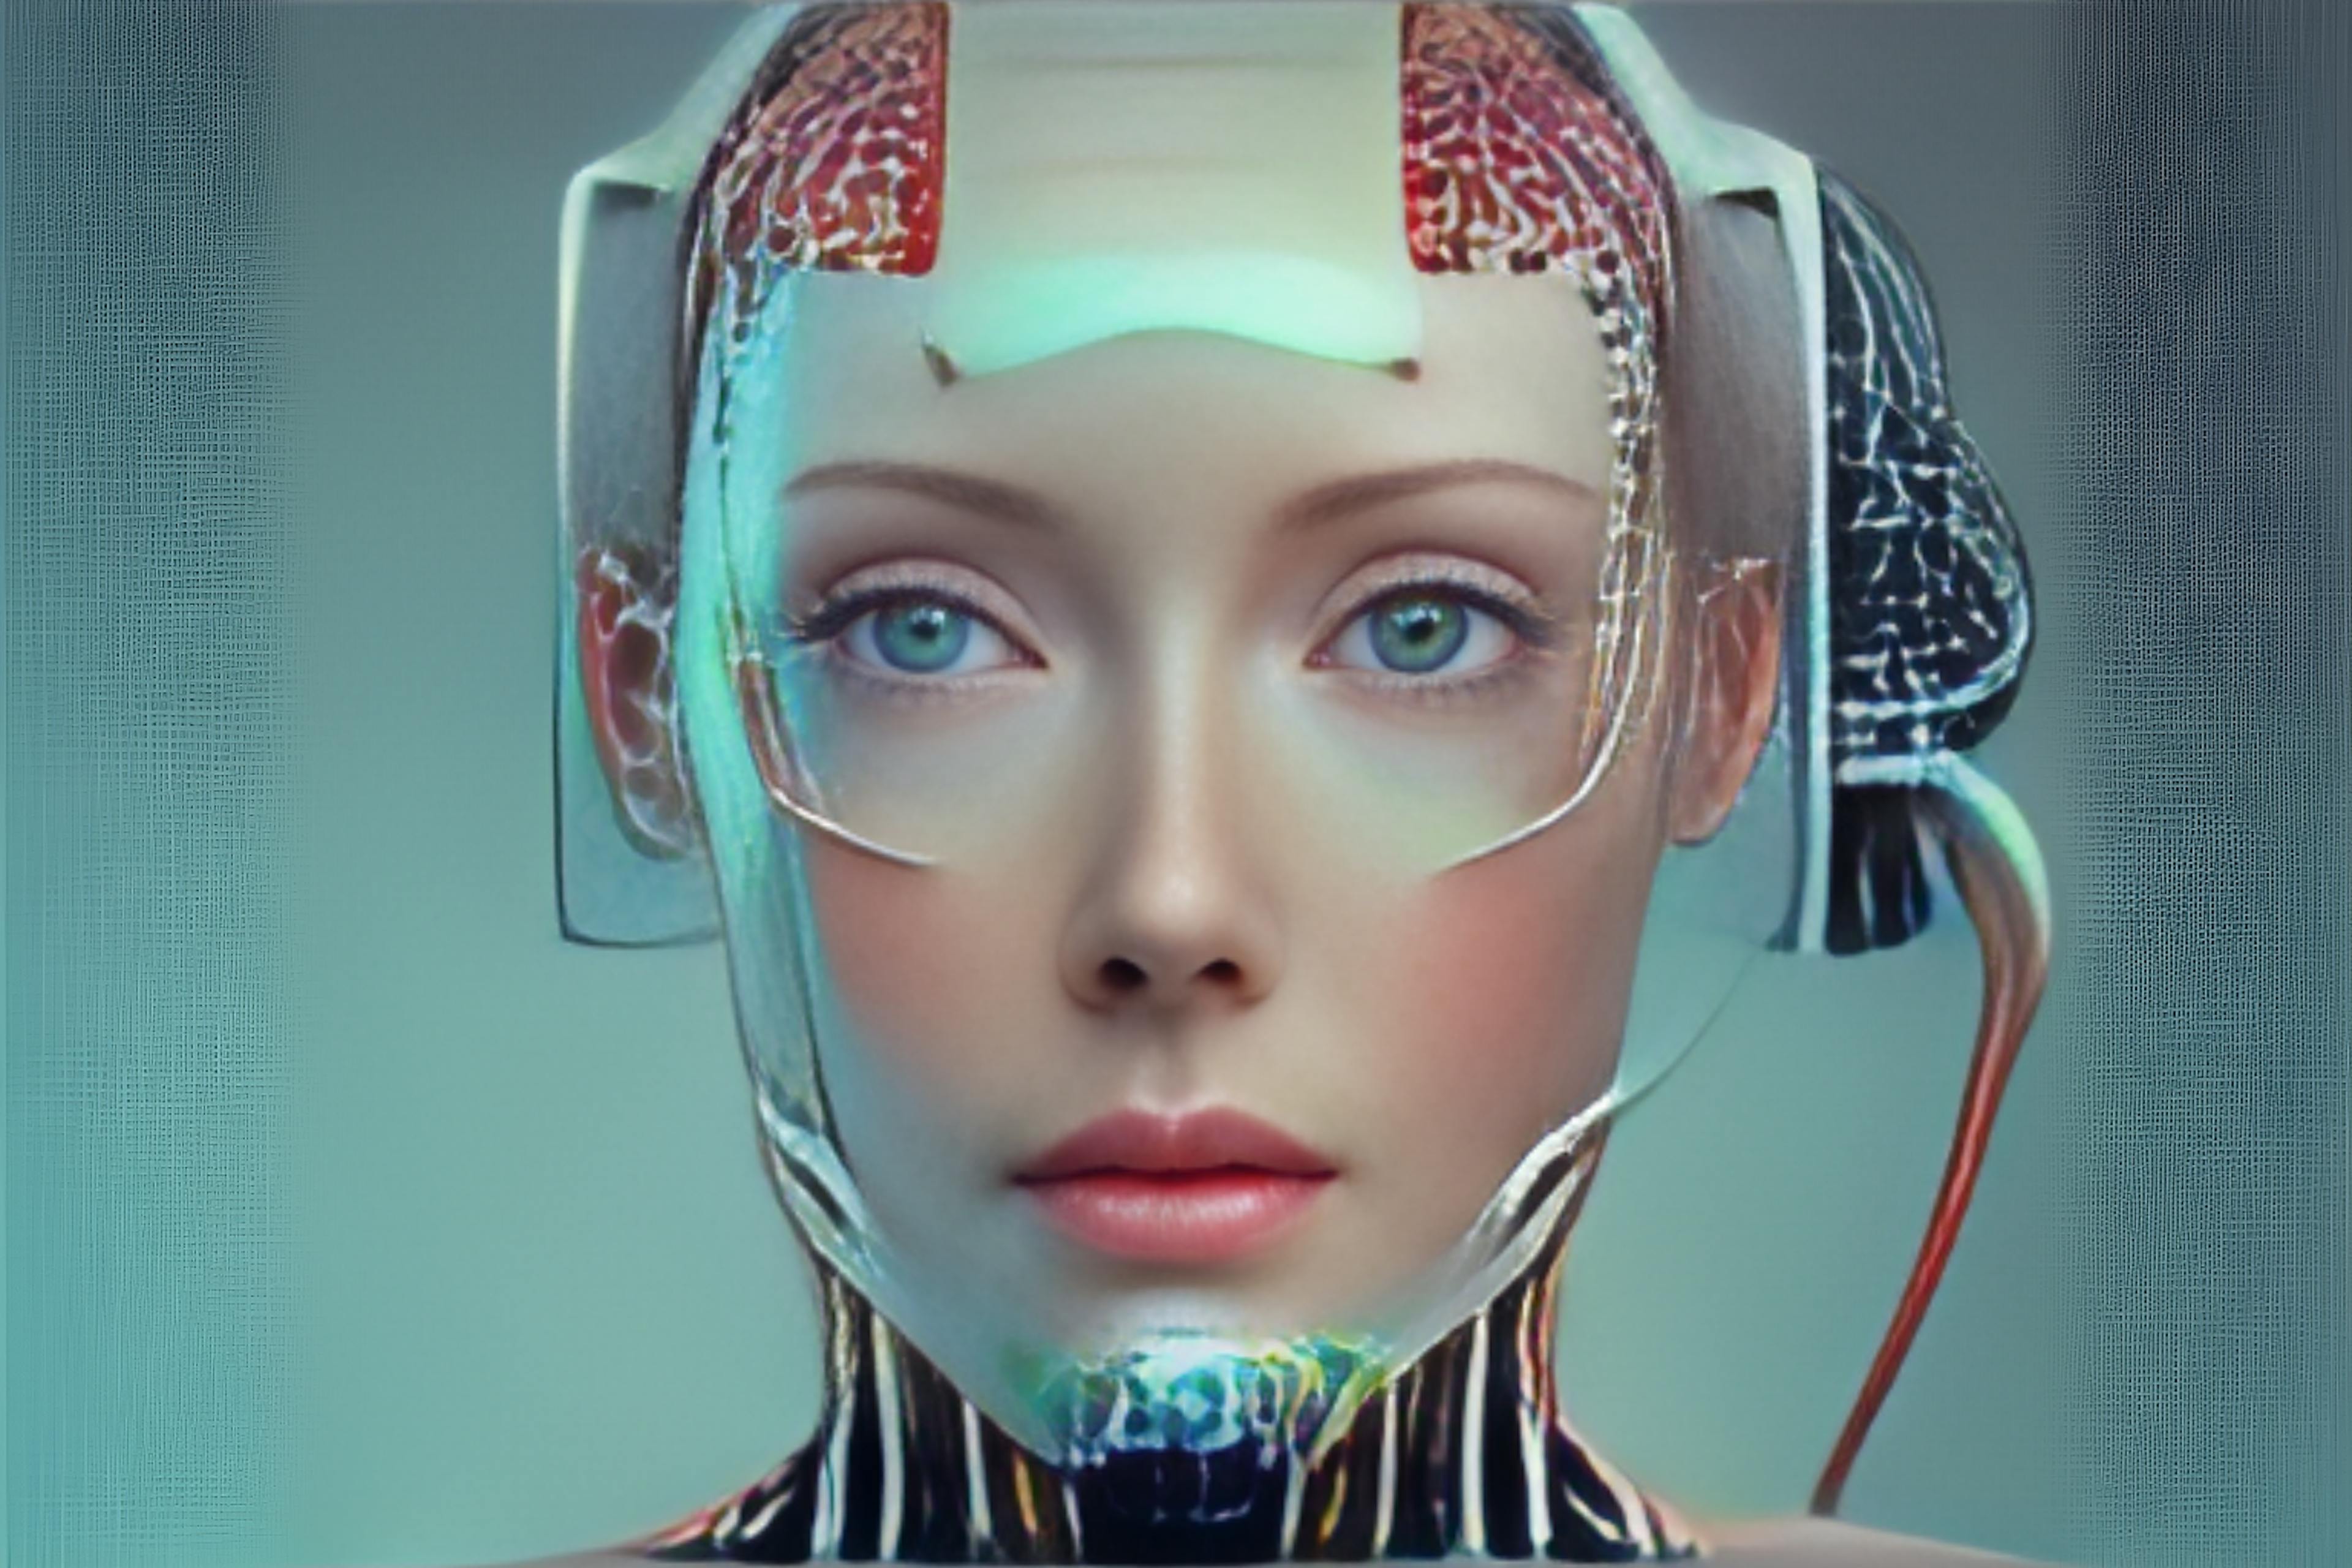 featured image - Từ mát-xa đến phẫu thuật: Người máy và trí tuệ nhân tạo đang thay đổi y học và sắc đẹp như thế nào